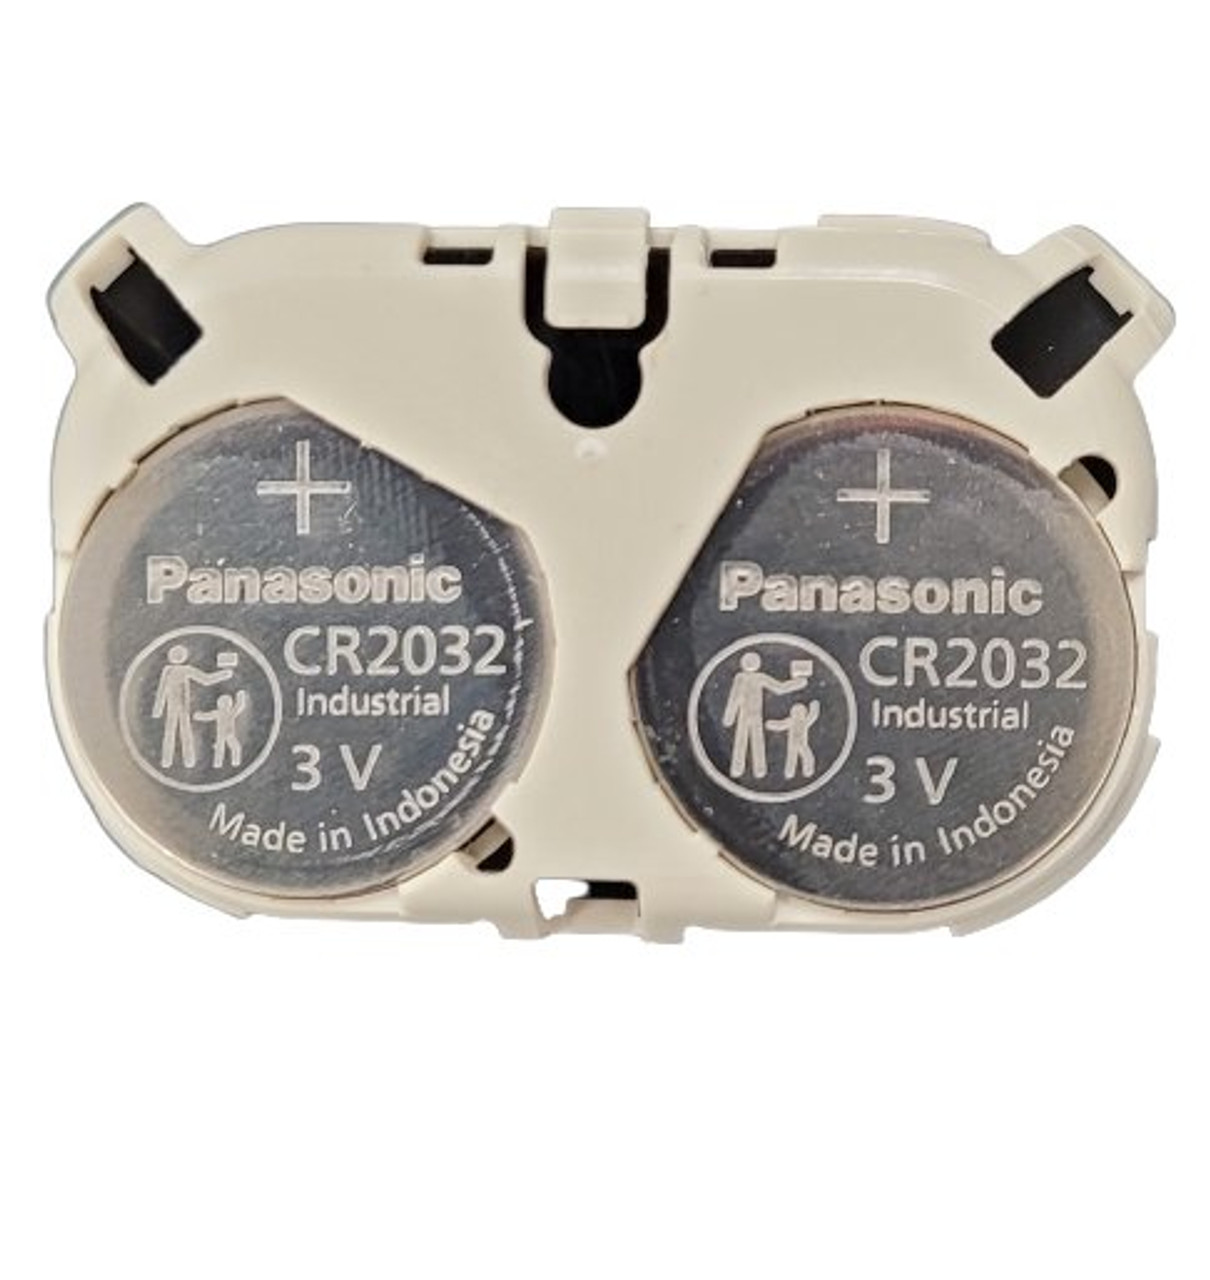 PKG (4) Panasonic Industrial CR2032 Coin Lithium 3V 20mm Diameter Battery